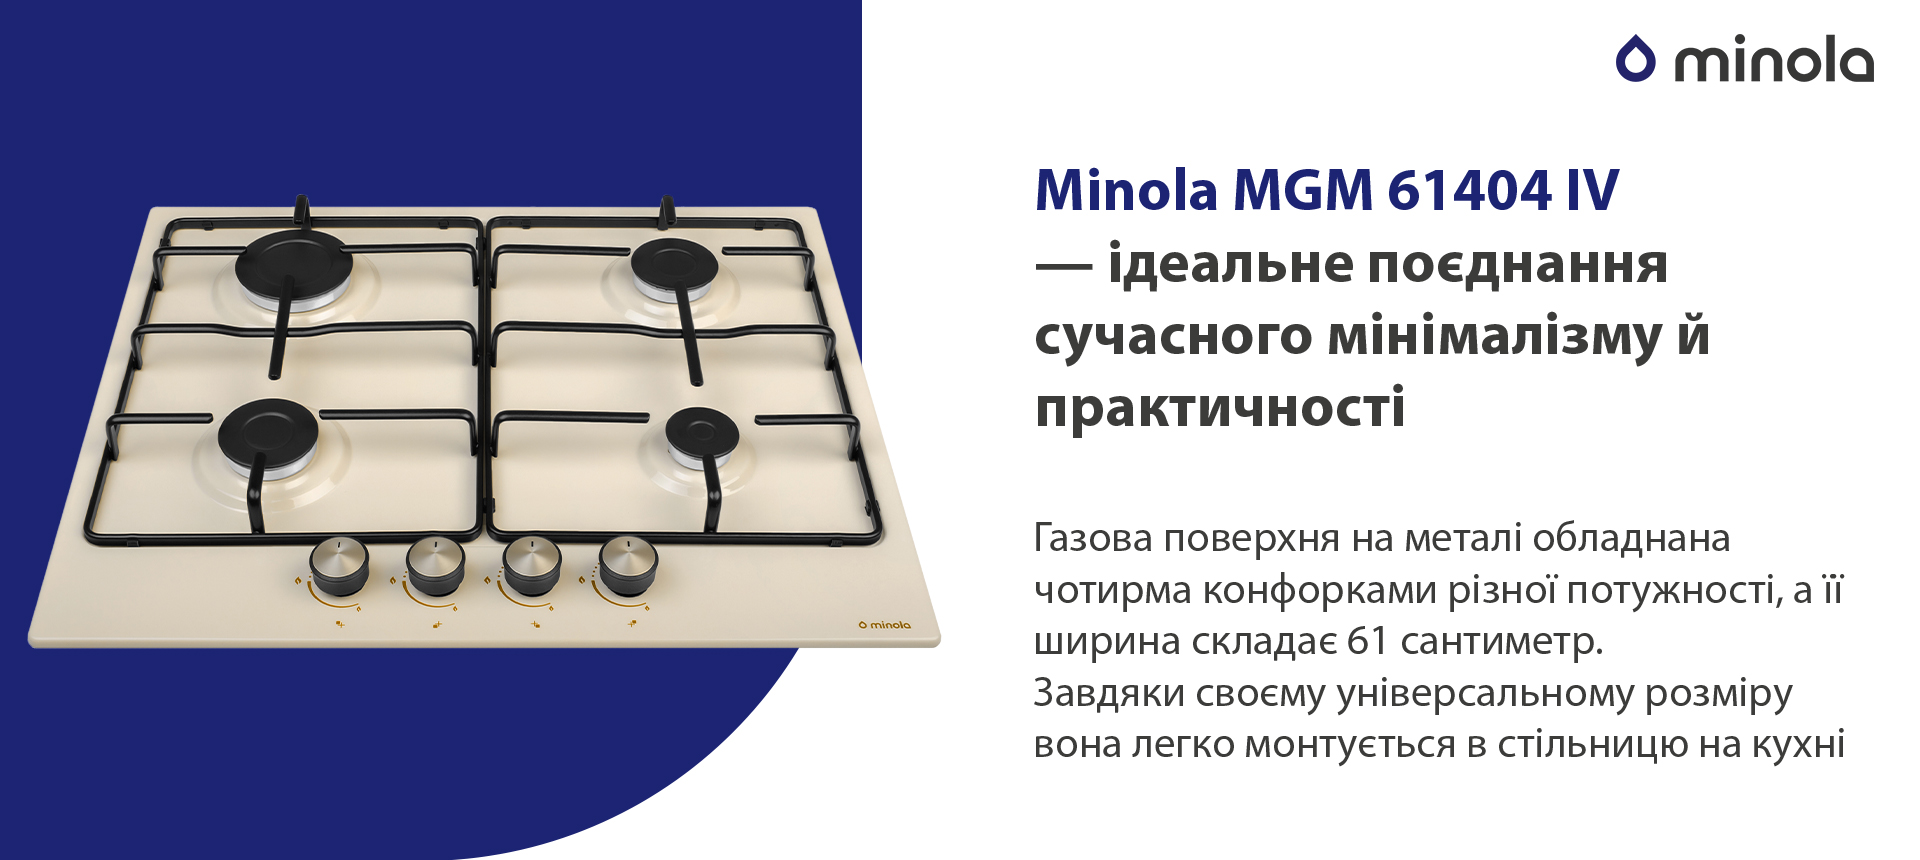 Minola MGM 61404 IV в магазине в Киеве - фото 10